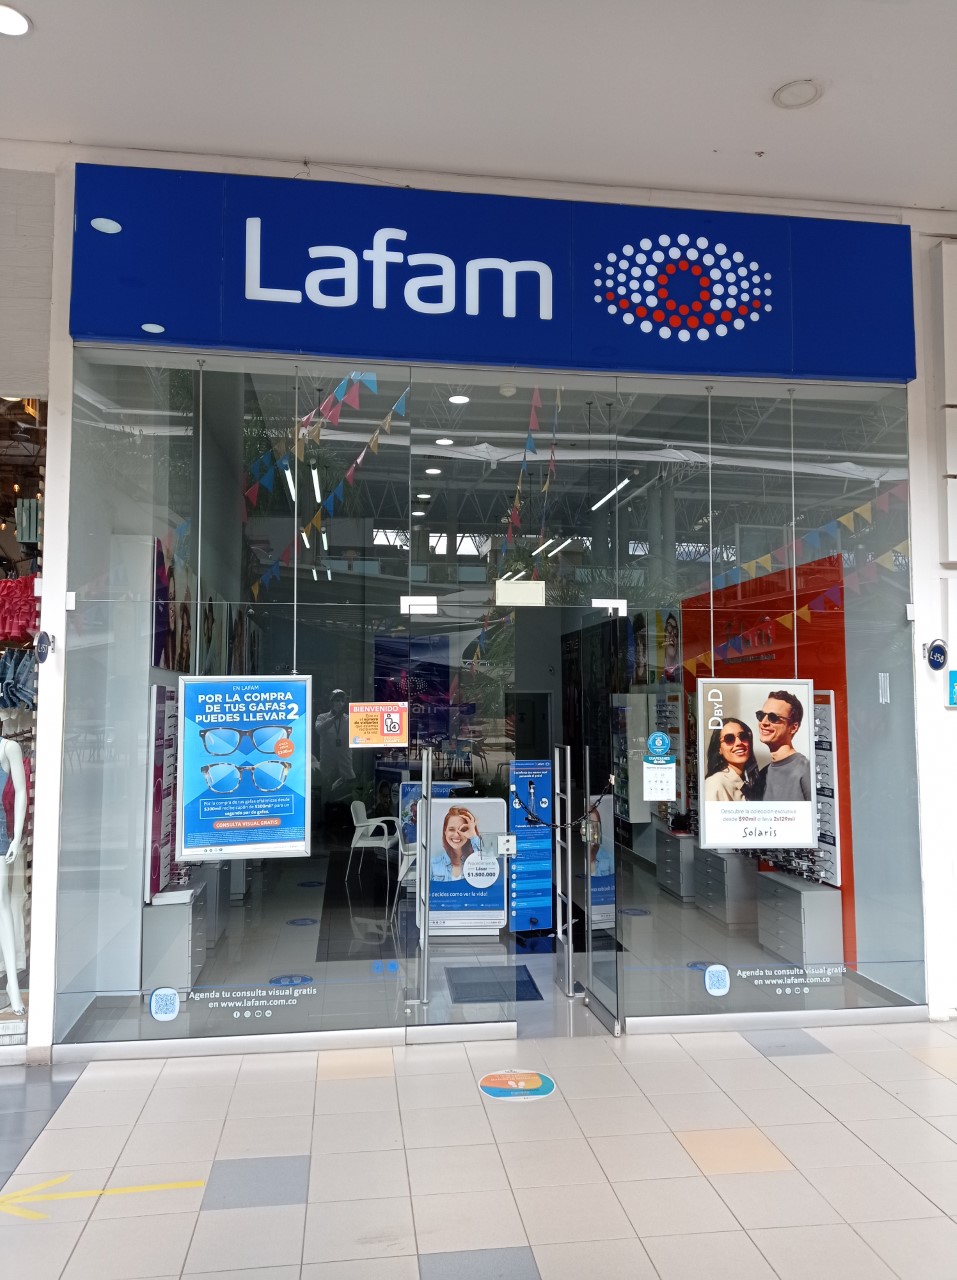 Lafam - Centro Comercial Palmetto plaza